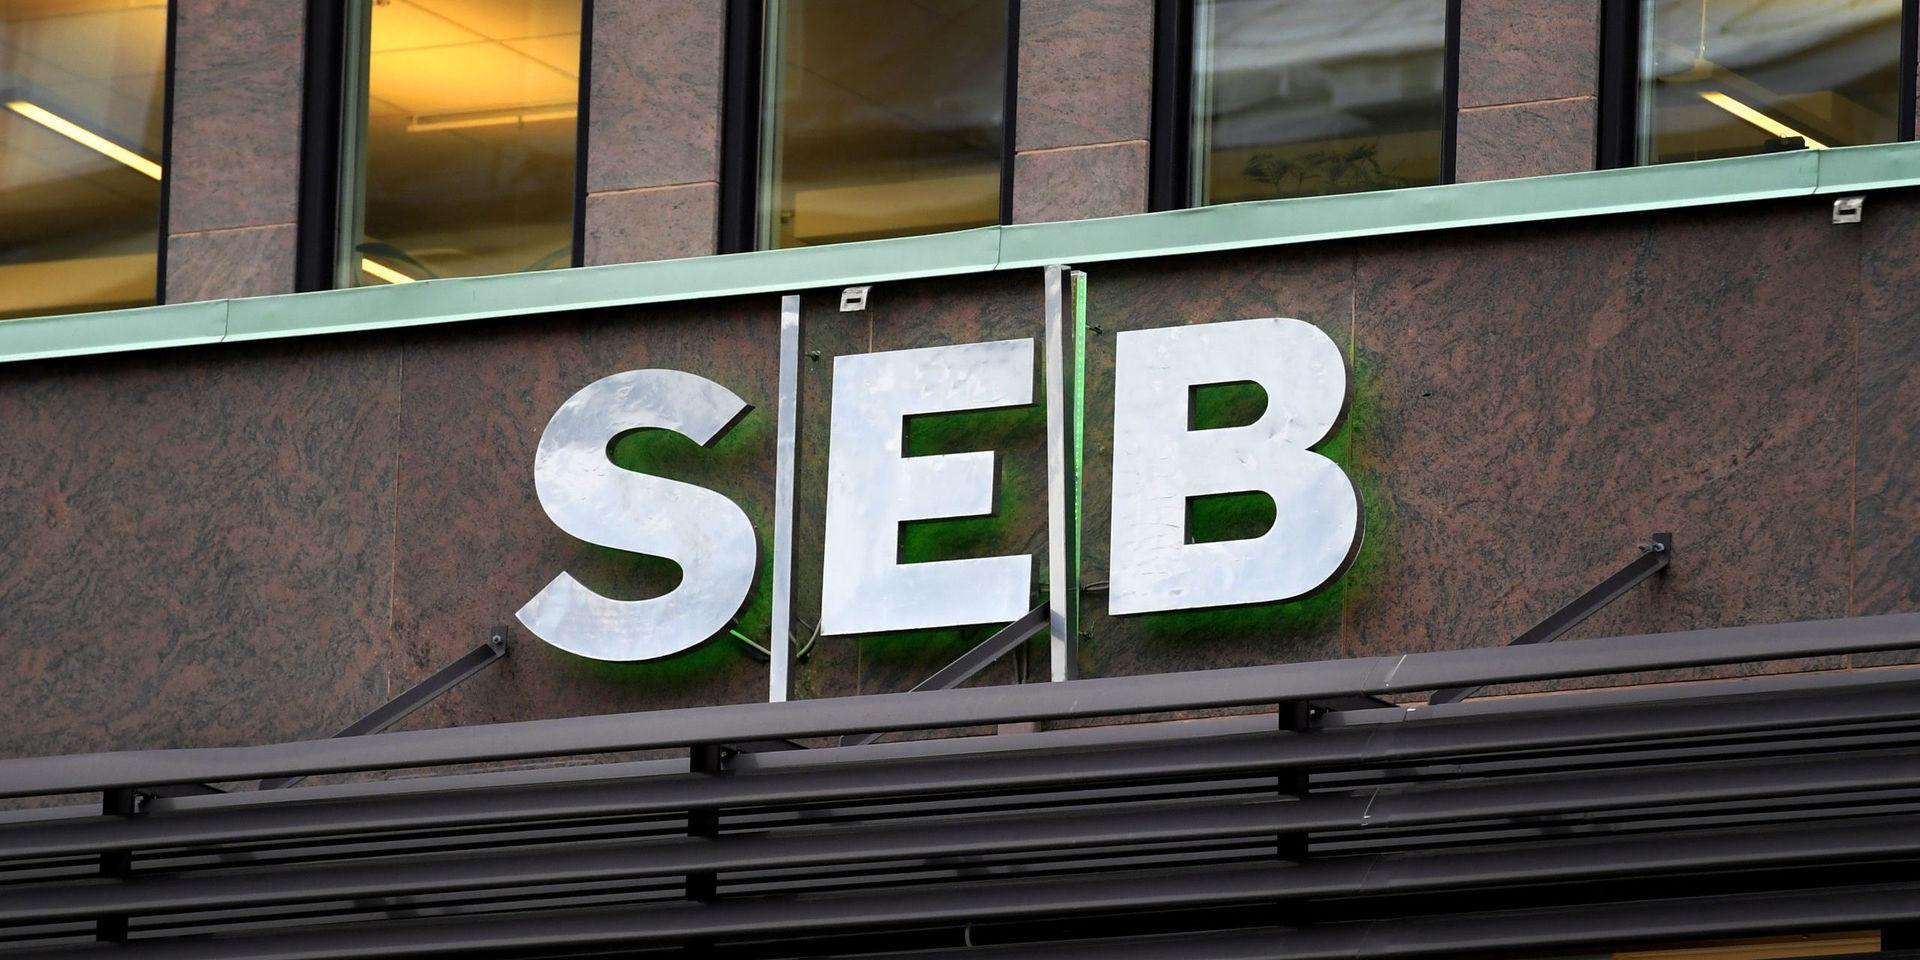 Anklagas. Banken SEB pekas ut som inblandade i en skandal som involverar stöld av skattemedel. 